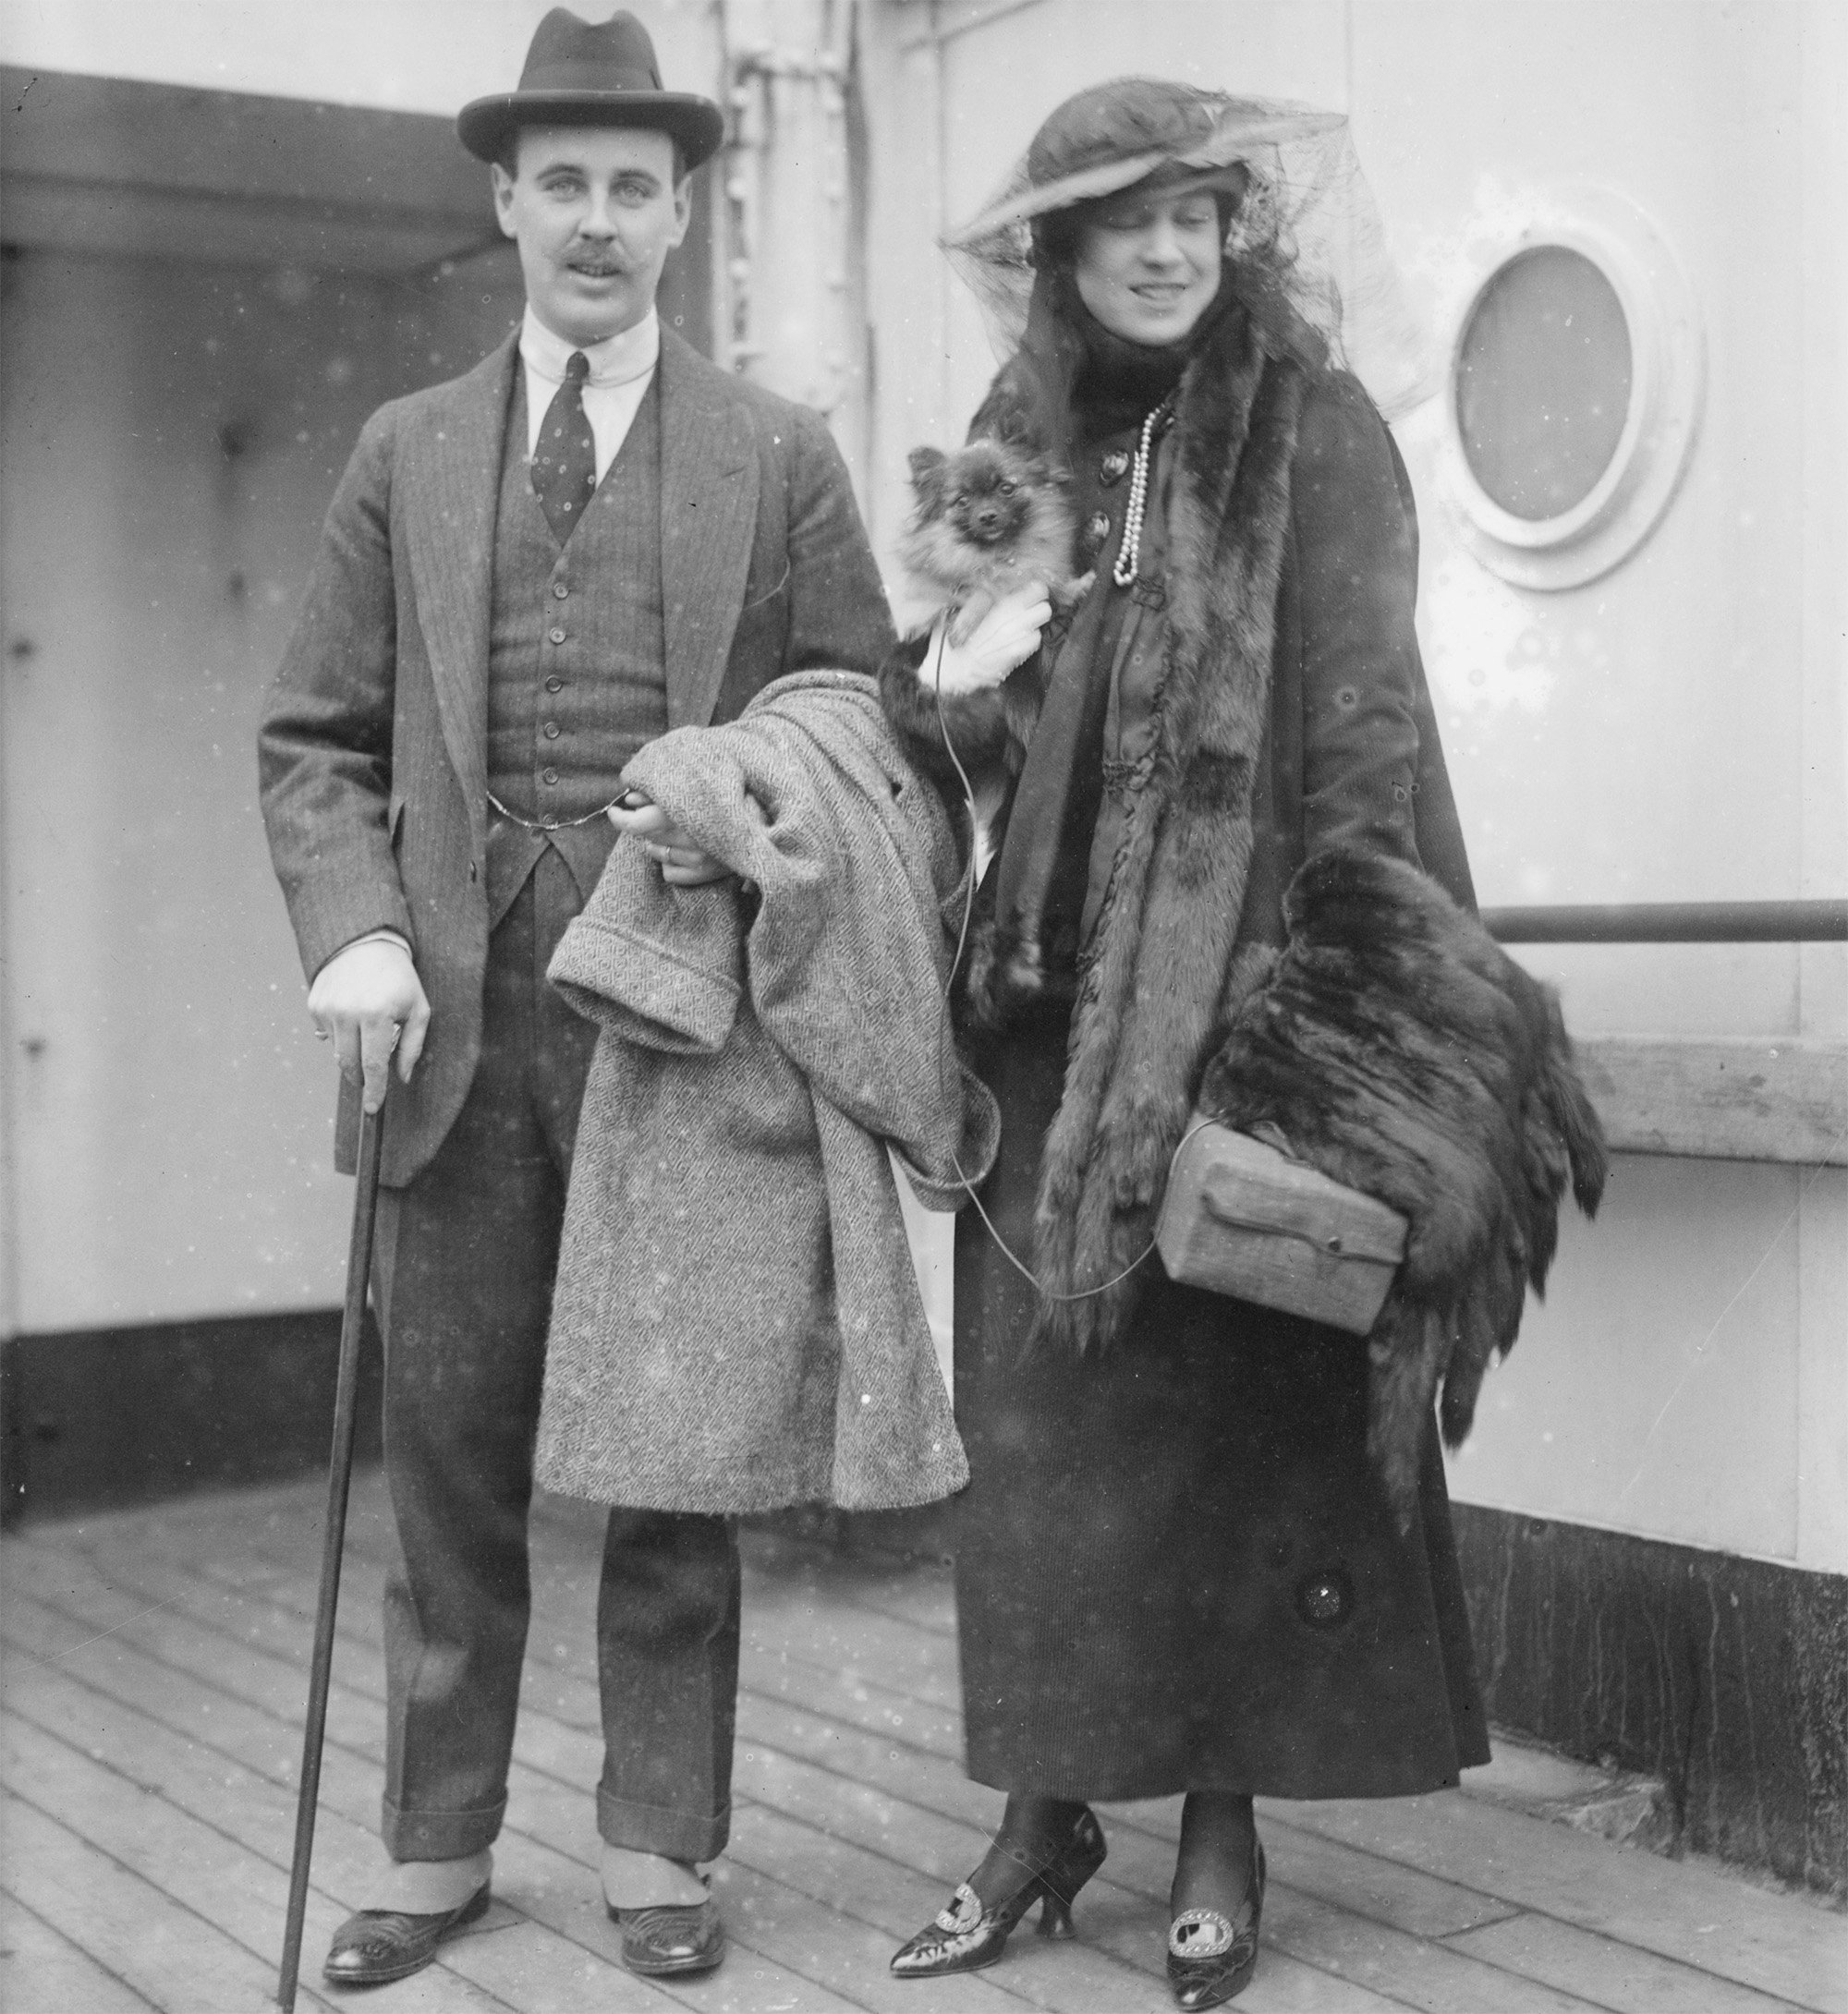 Geschäftsmann und Finanzier Anthony J. Drexel (1887-1946) mit seiner Frau Marjorie an Bord des Dampfers New York im Jahr 1915.